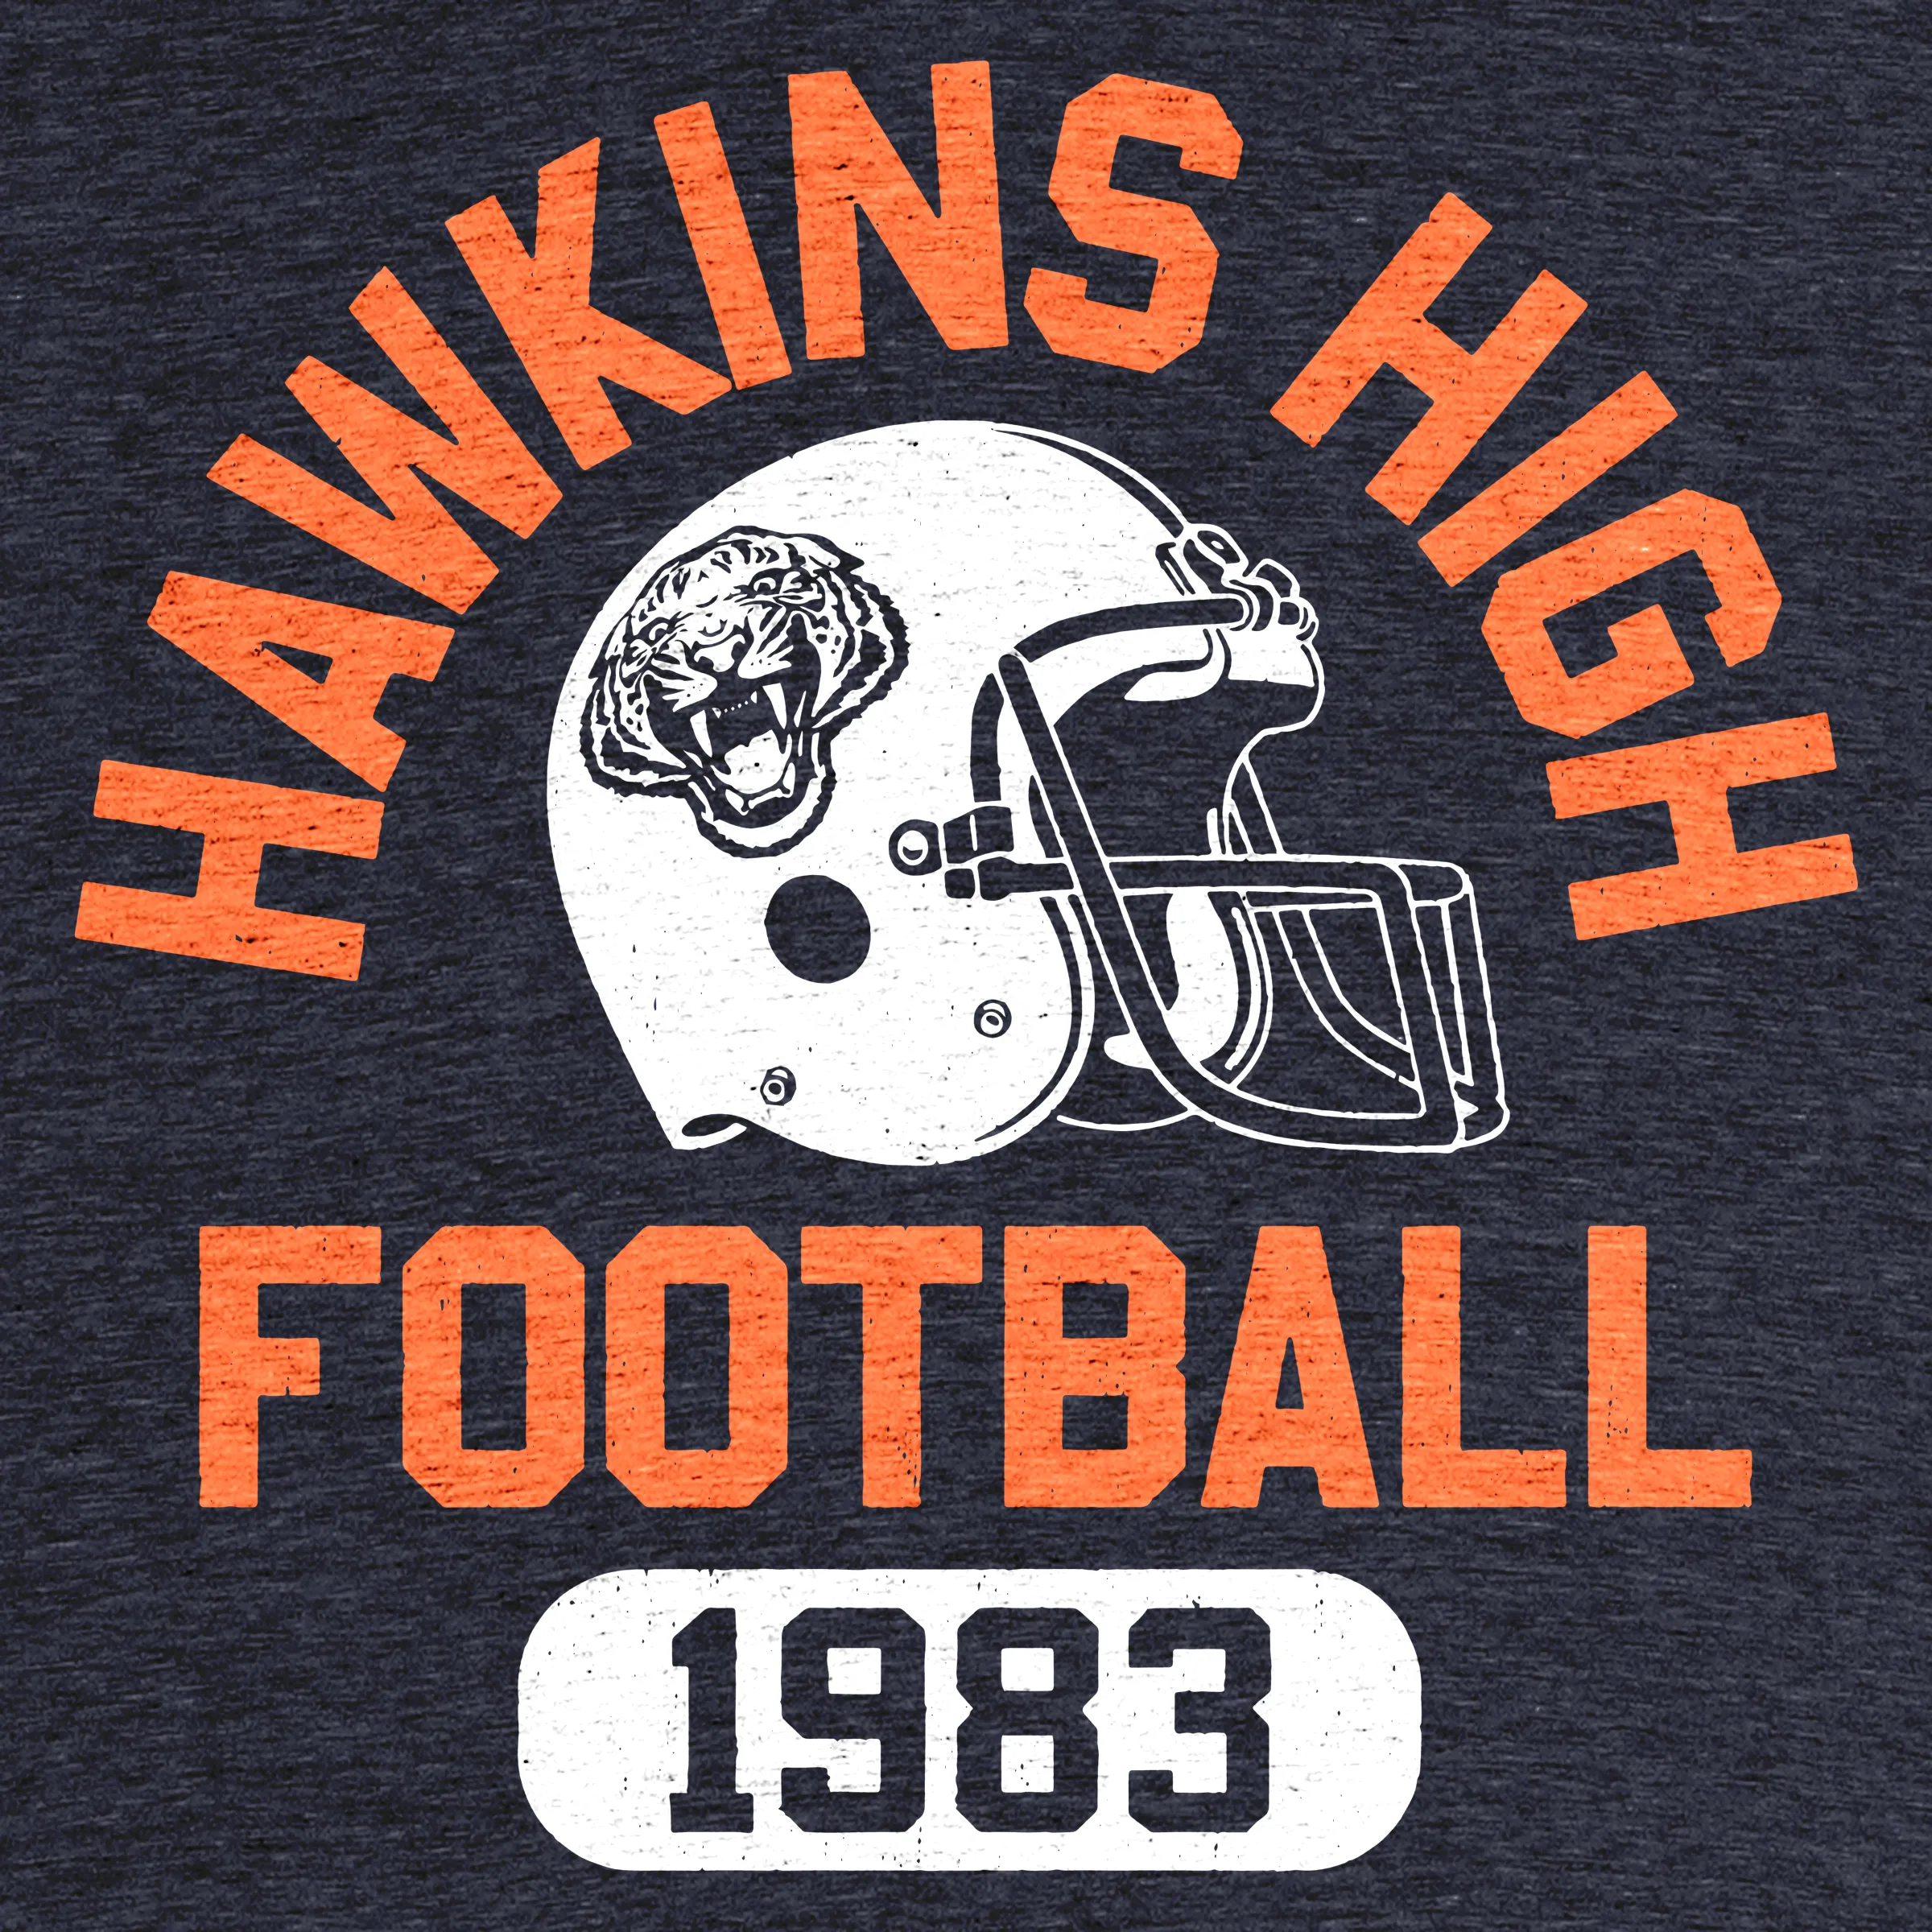 Hawkins Indiana This Is My Hawkins High School Uniform